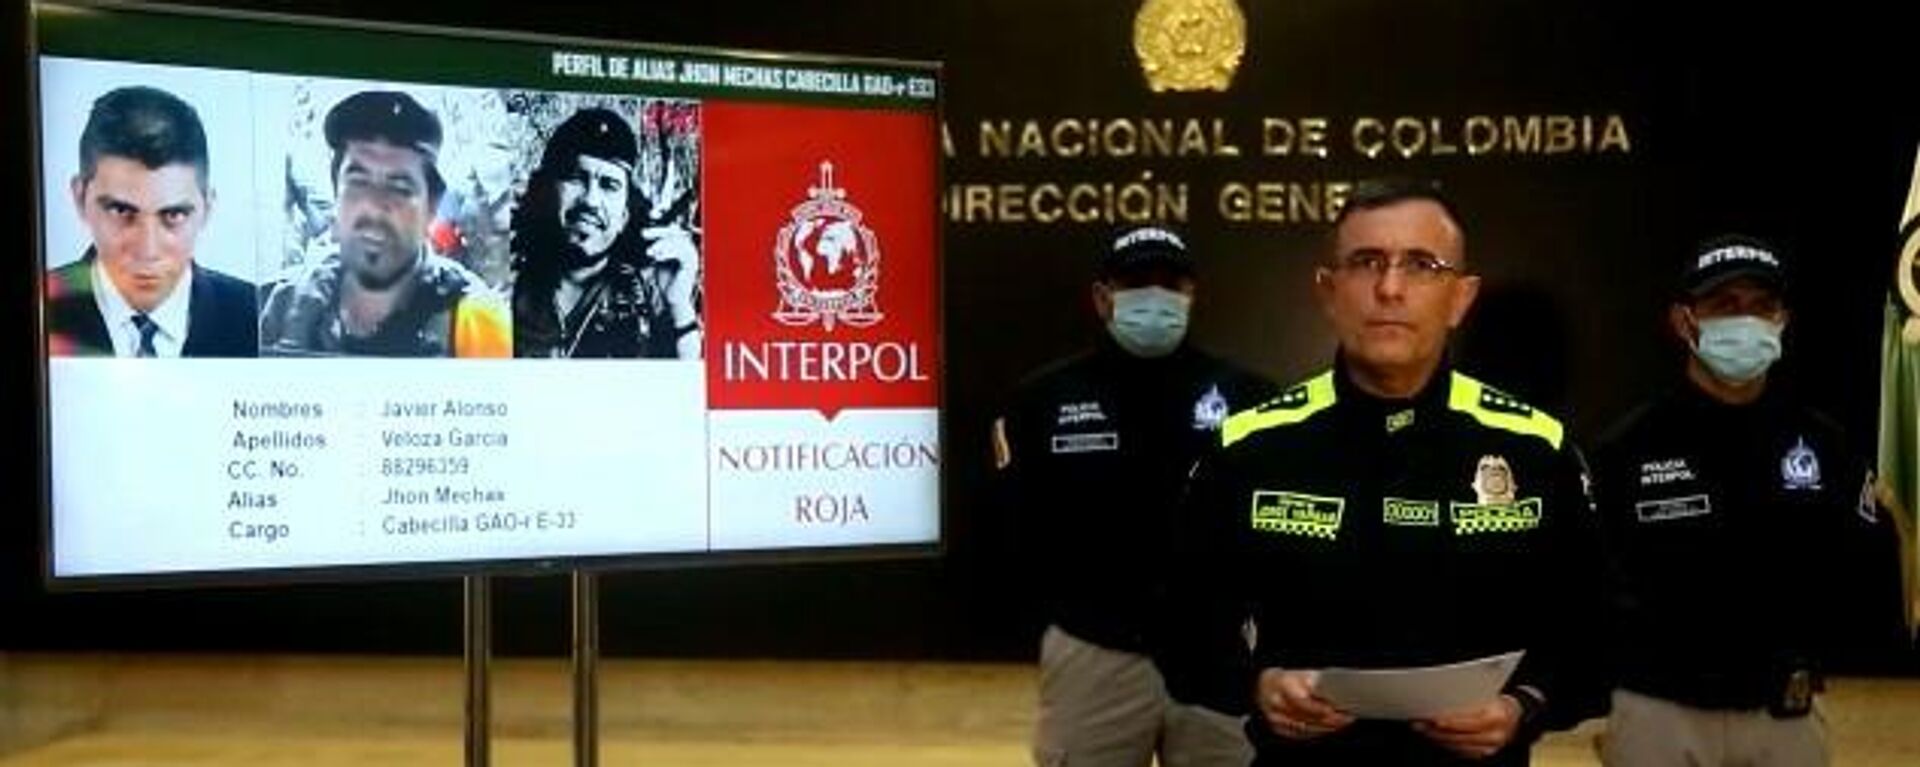 Policía de Colombia expide circular roja de Interpol contra líder de exFARC 'Jhon Mechas', el 1 de agosto del 2021 - Sputnik Mundo, 1920, 01.08.2021